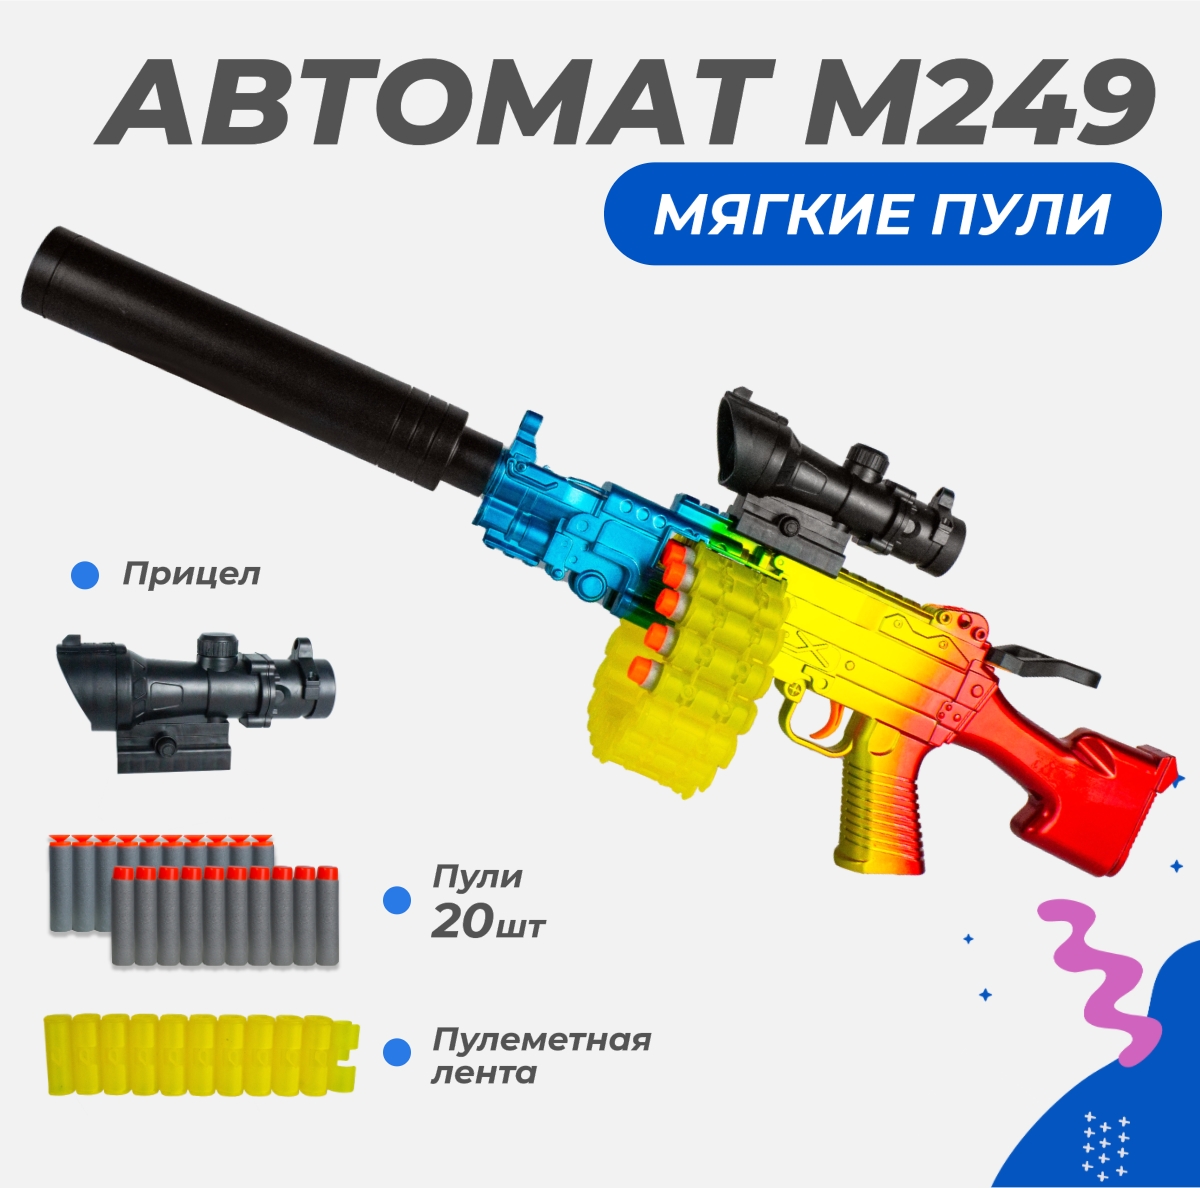 Нерф автомат игрушечный Story Game M249 - фото 1